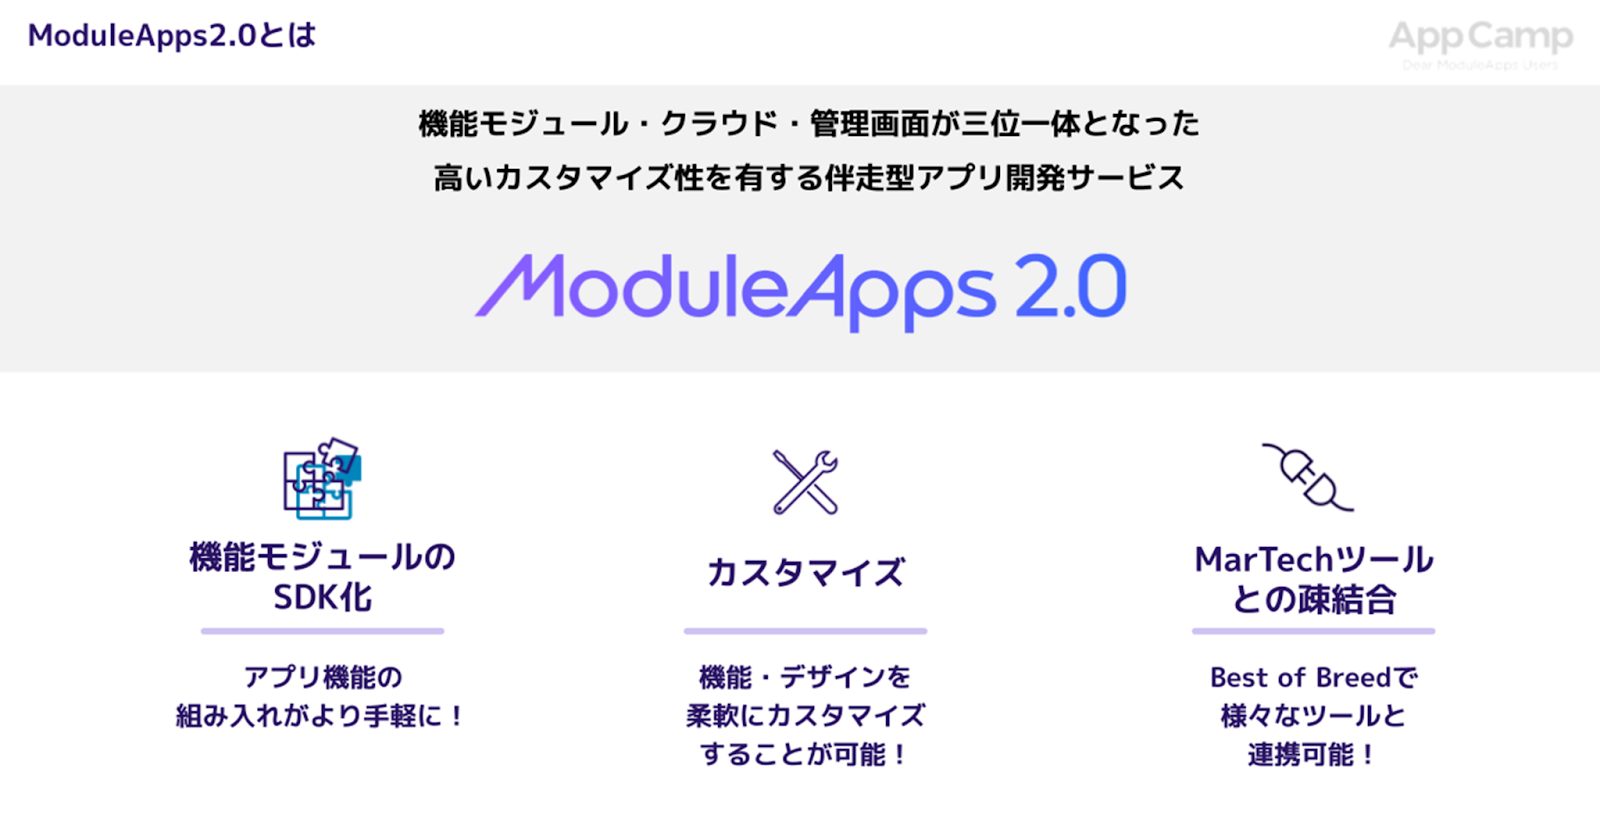 ModuleApps2.0とは